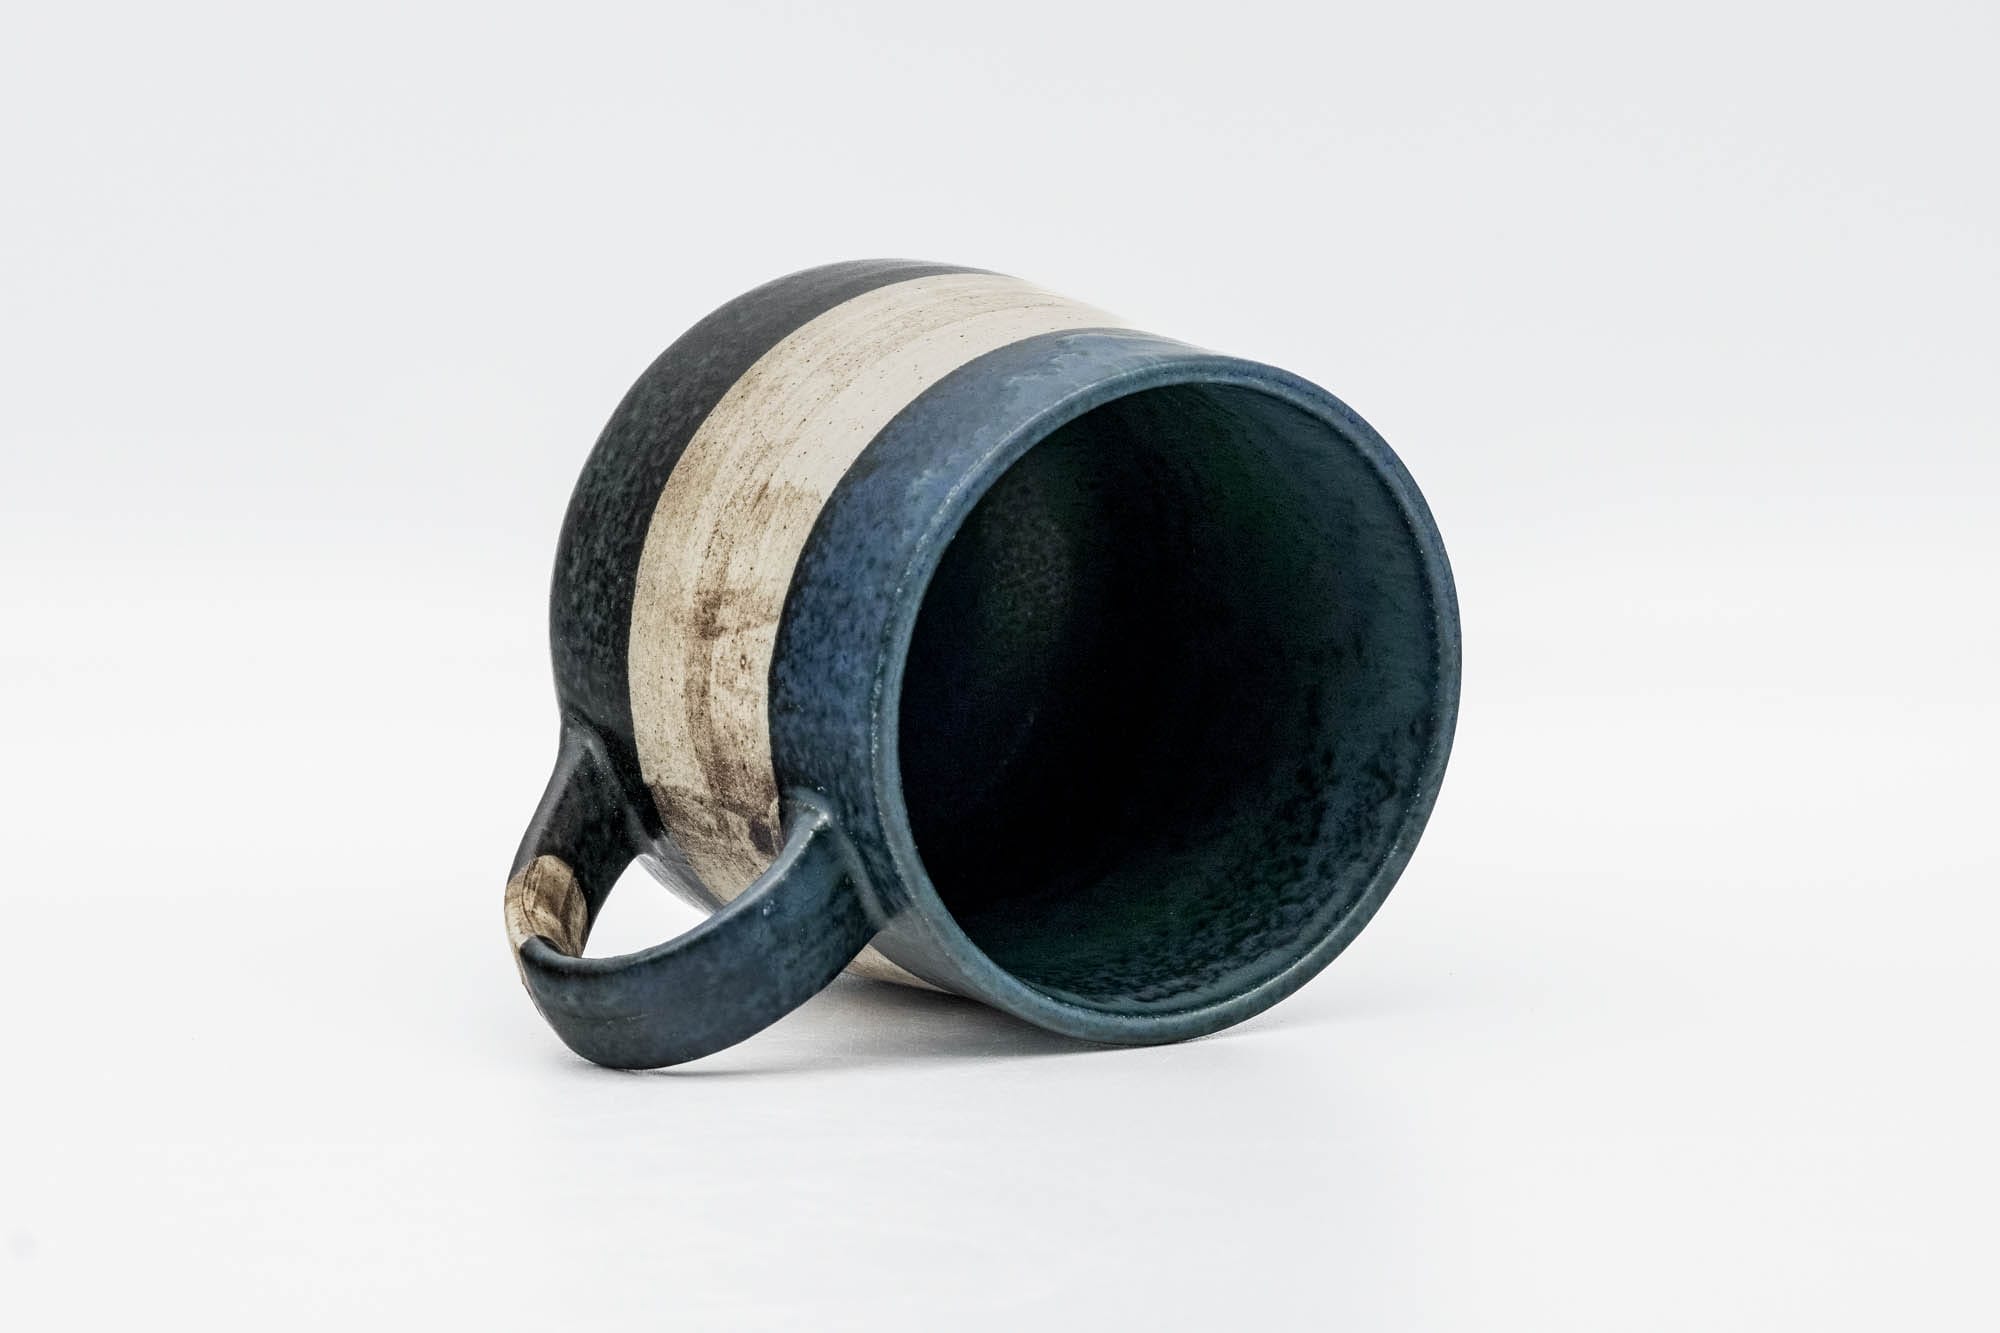 Japanese Teacup - Blue Beige Black Striped Mino-yaki Mug - 280ml